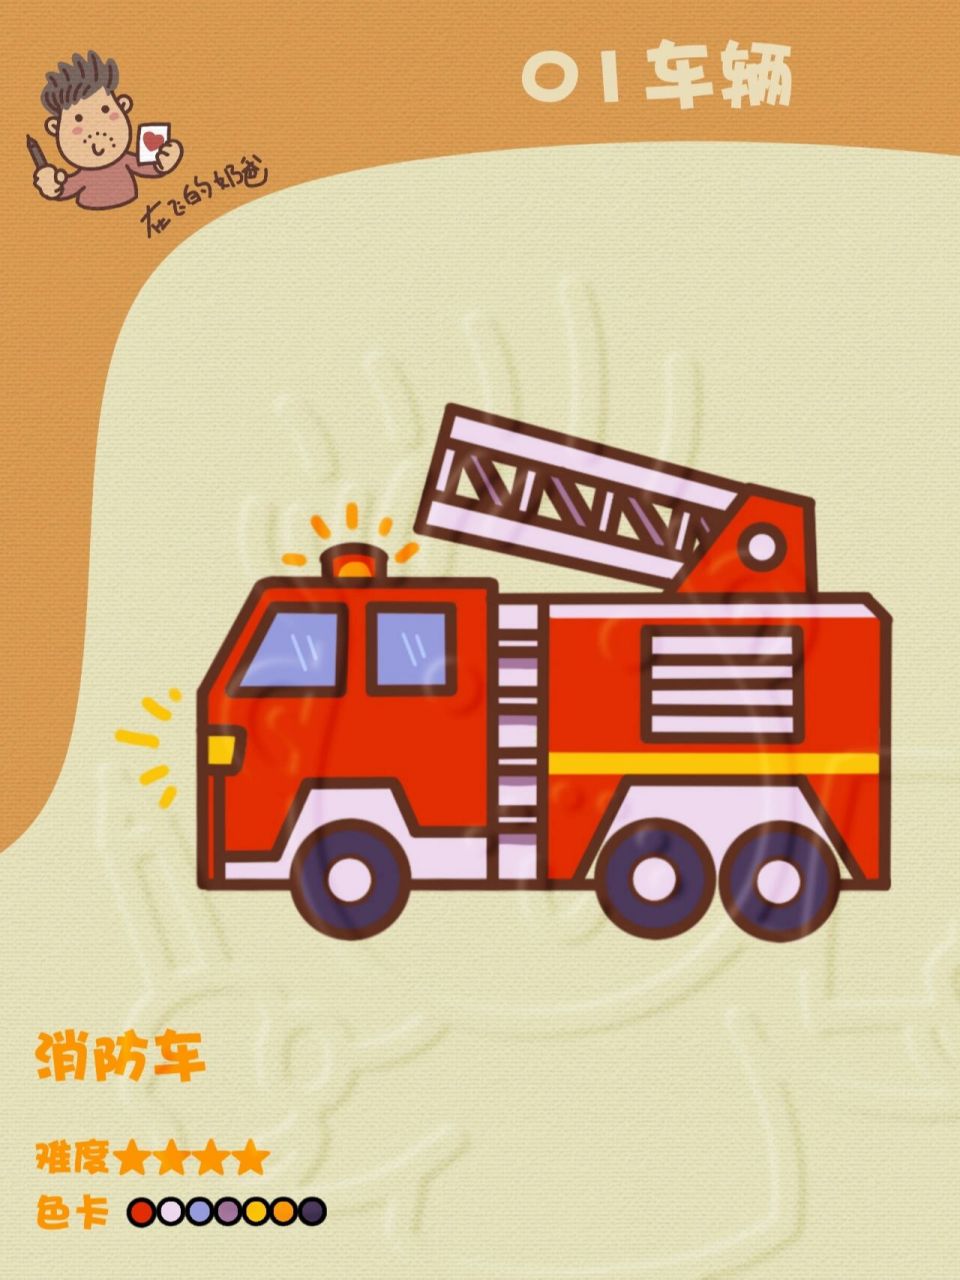 消防车灭火简笔画图片